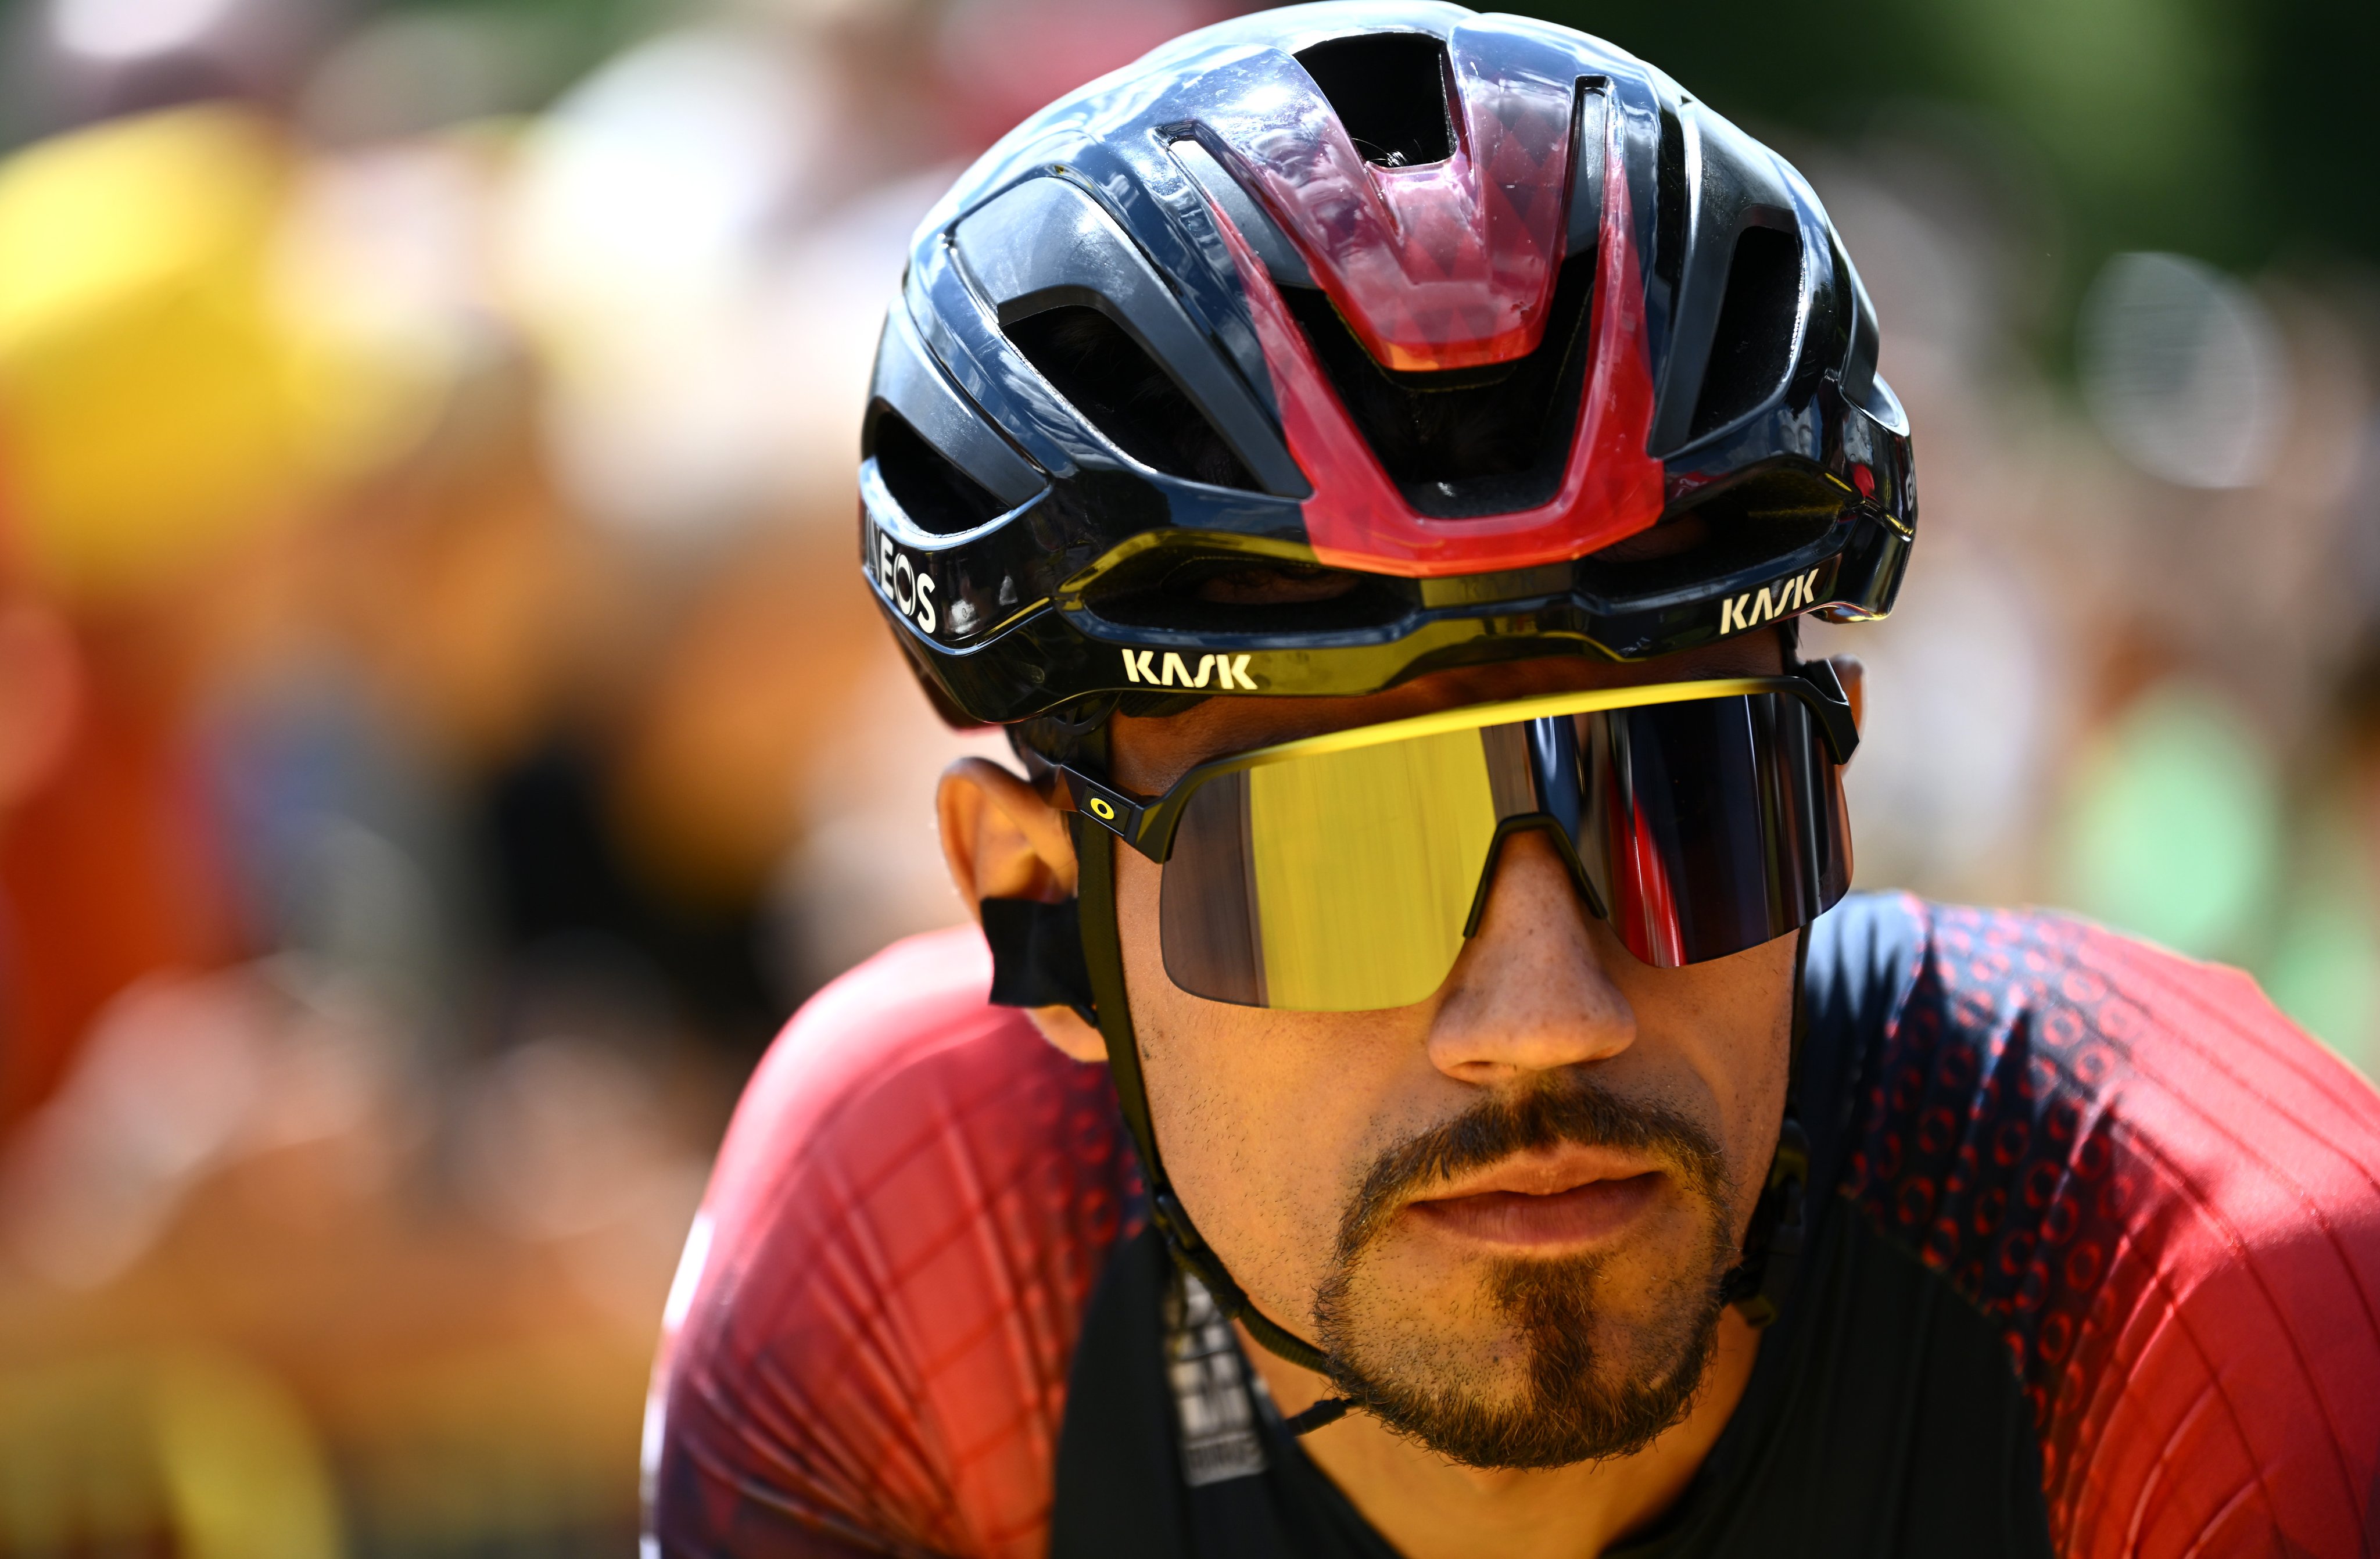 Este domingo se disputó la tercera jornada del Tour de Francia. Foto: Twitter Ineos.